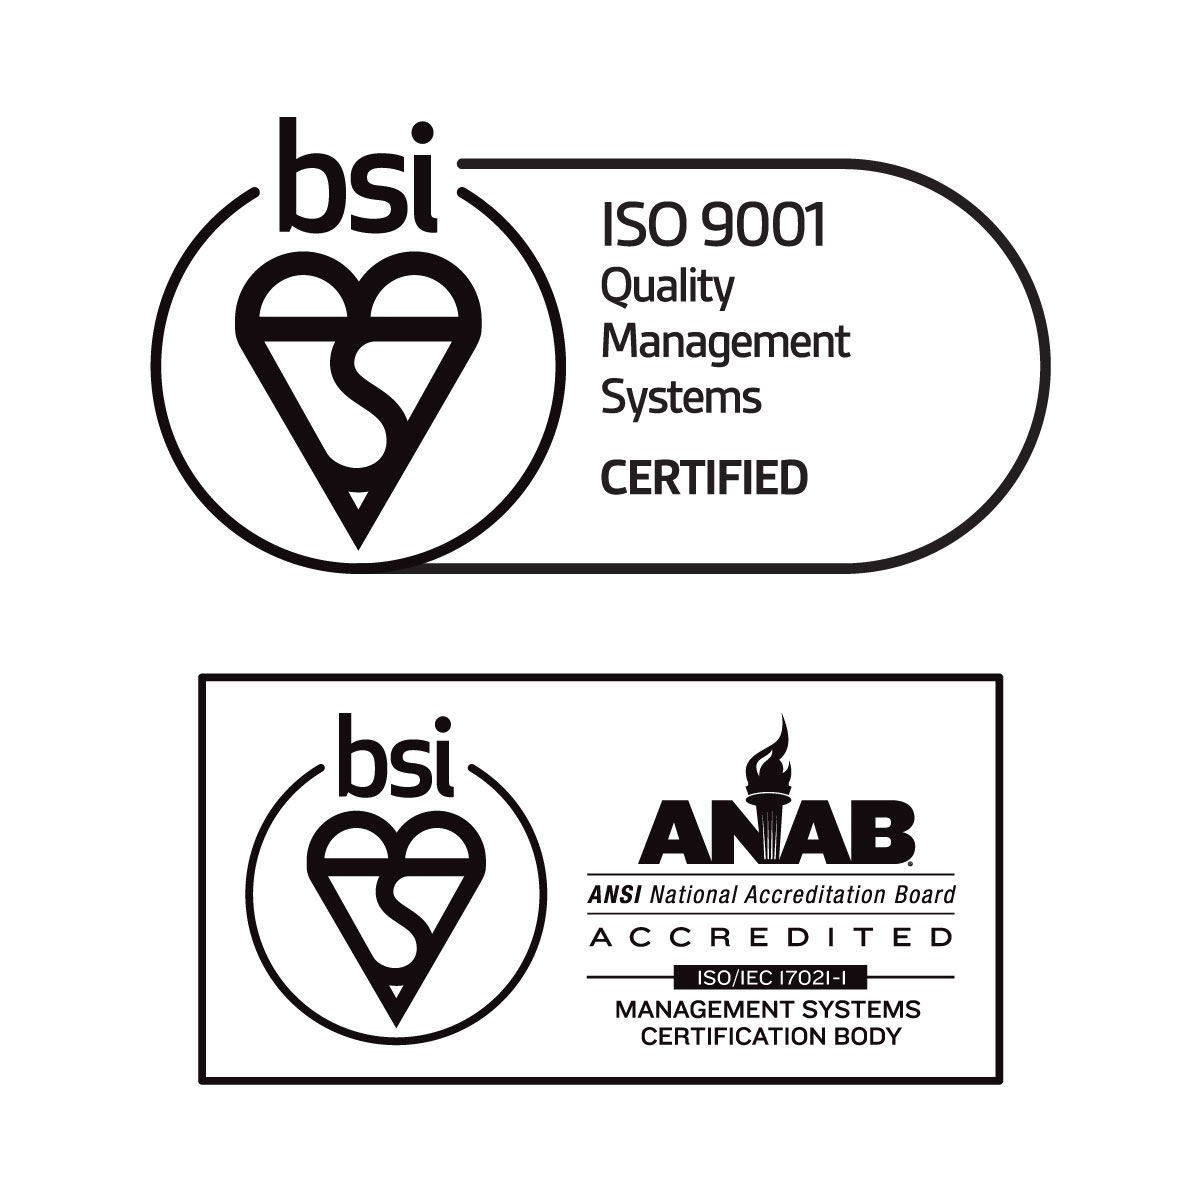 ISO 9001:2015 - CHỨNG NHẬN HỆ THỐNG QUẢN LÝ CHẤT LƯỢNG